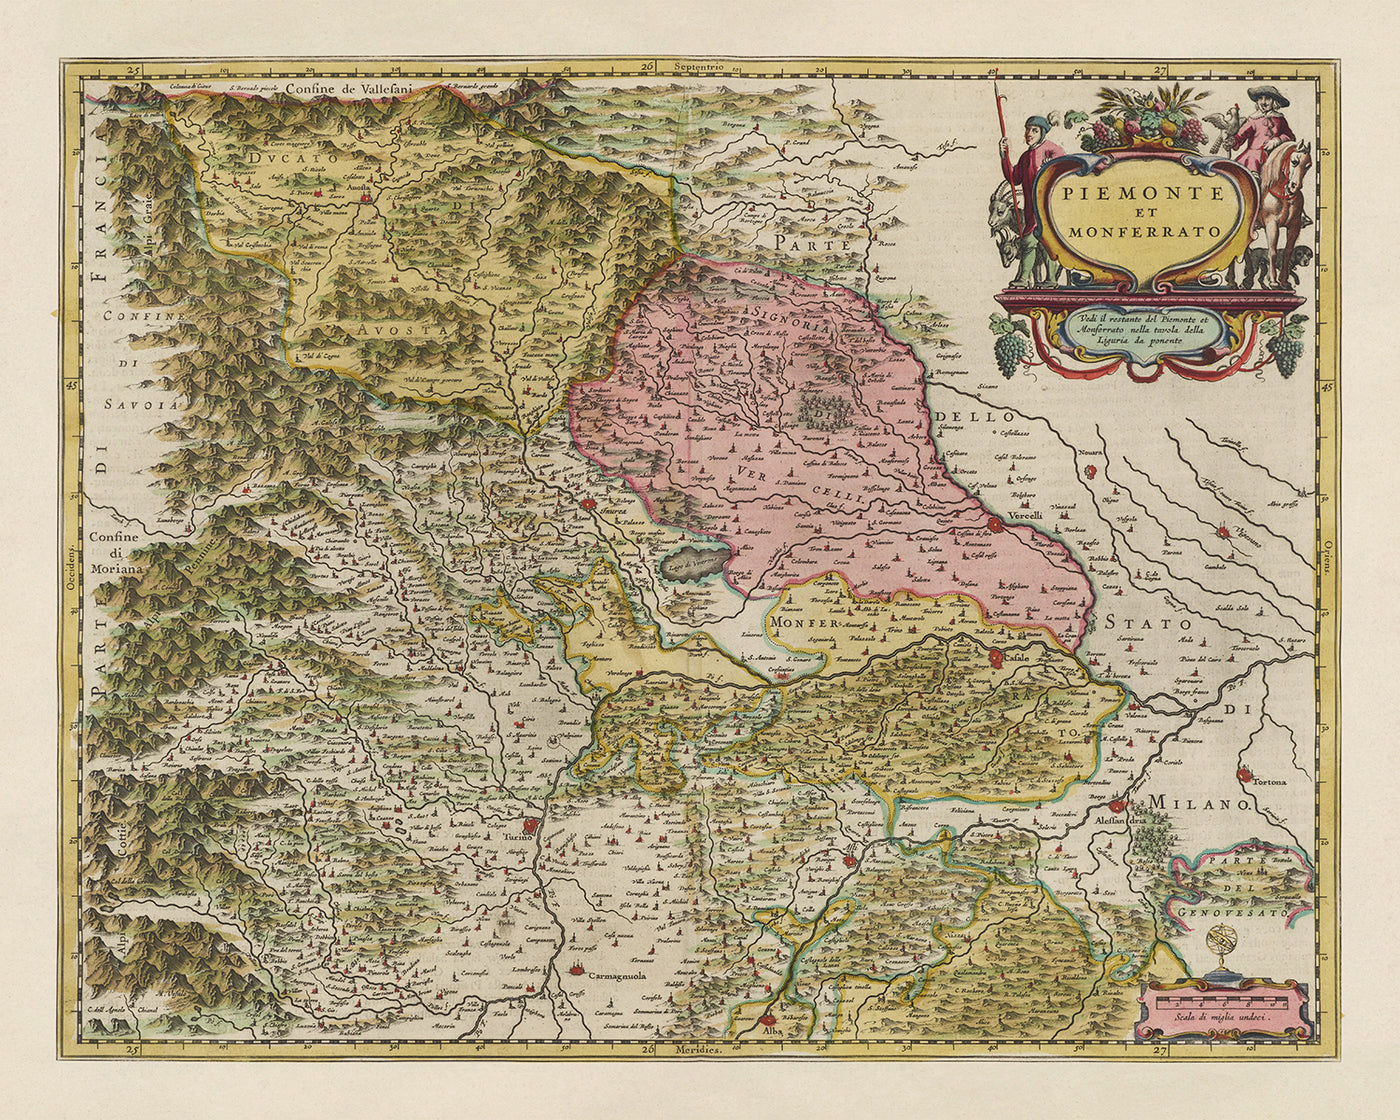 Mapa antiguo de Piamonte y Monferrato, Italia por Joan Blaeu, 1665: Turín, Alessandria, Asti, Casale Monferrato, Vercelli